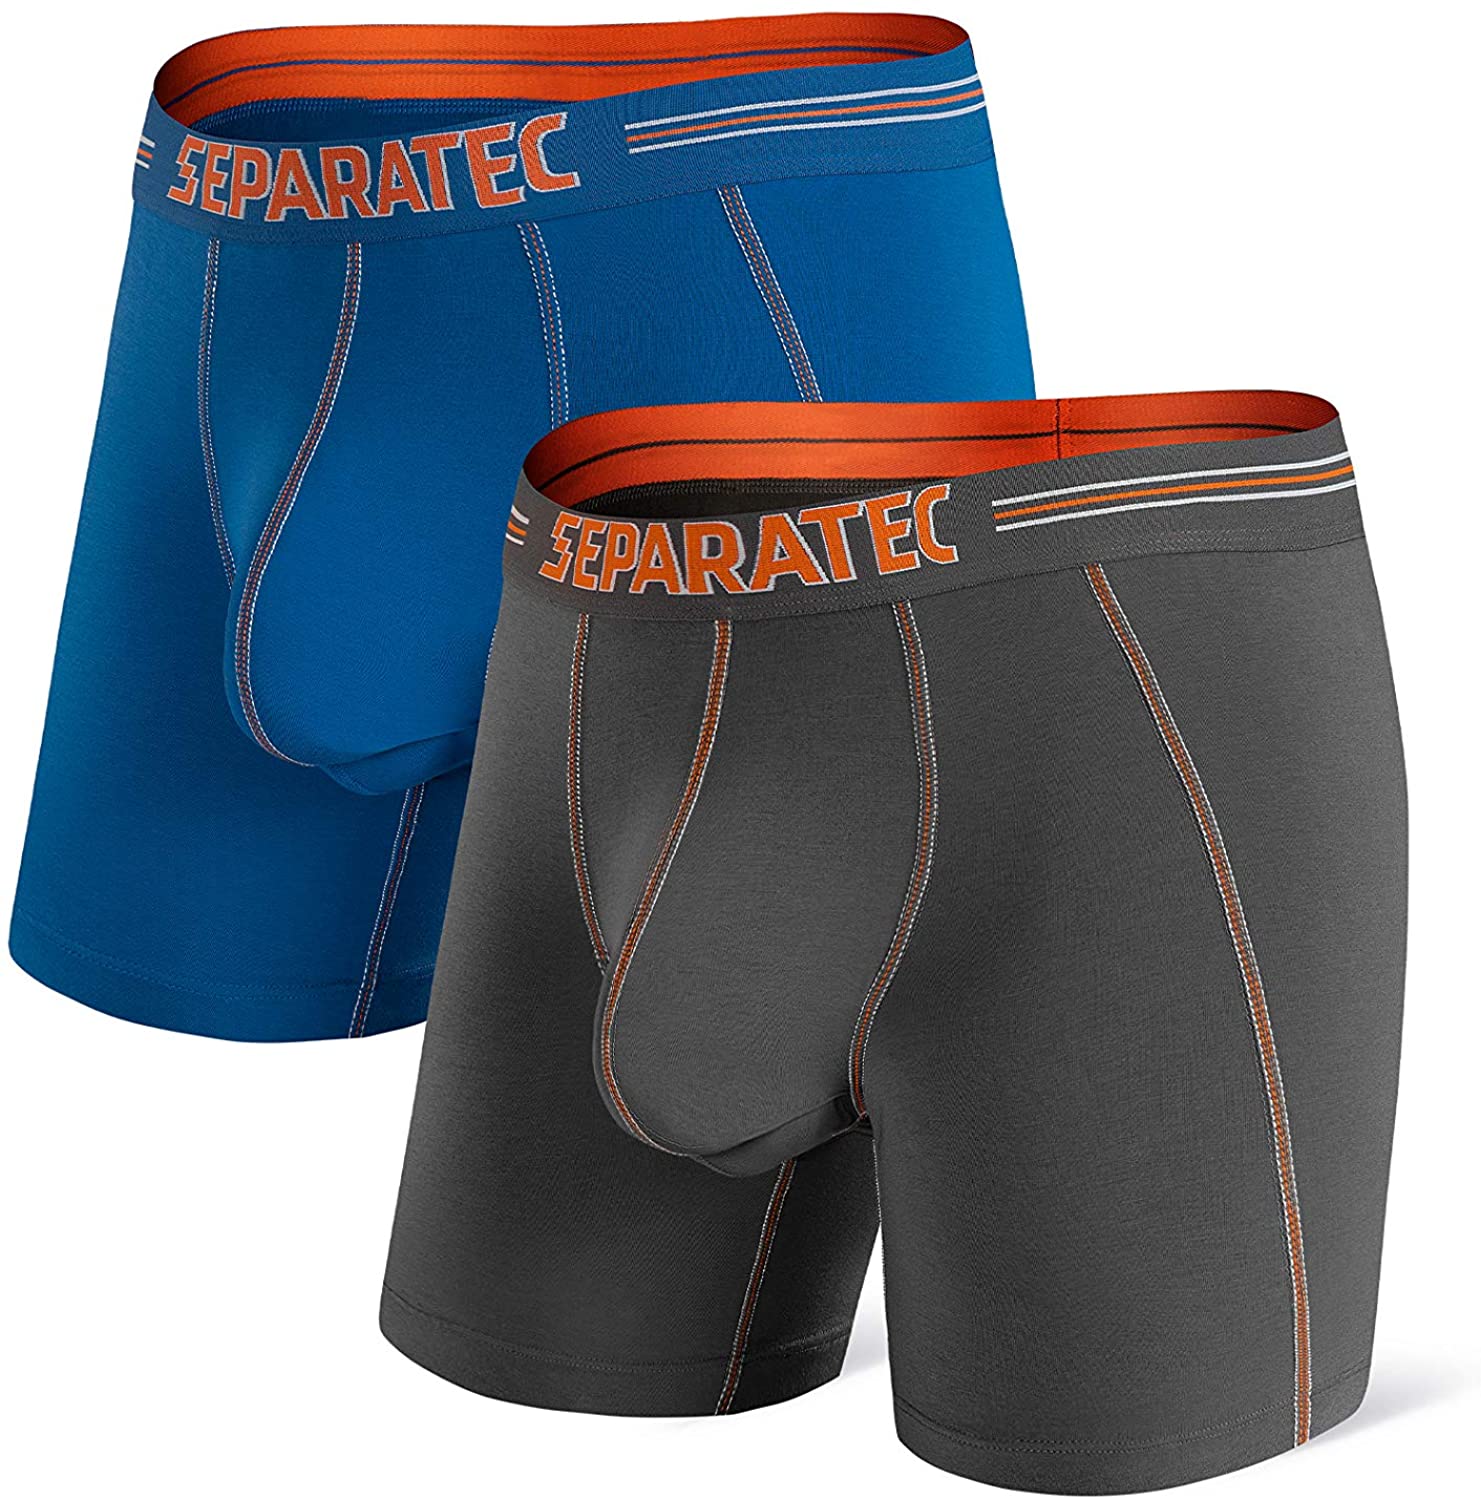 Separatec Men's Dual Pouch Underwear Comfort Soft Premium Cotton Modal  Blend Boxer Briefs 3-6 Pack at  Men's Clothing store